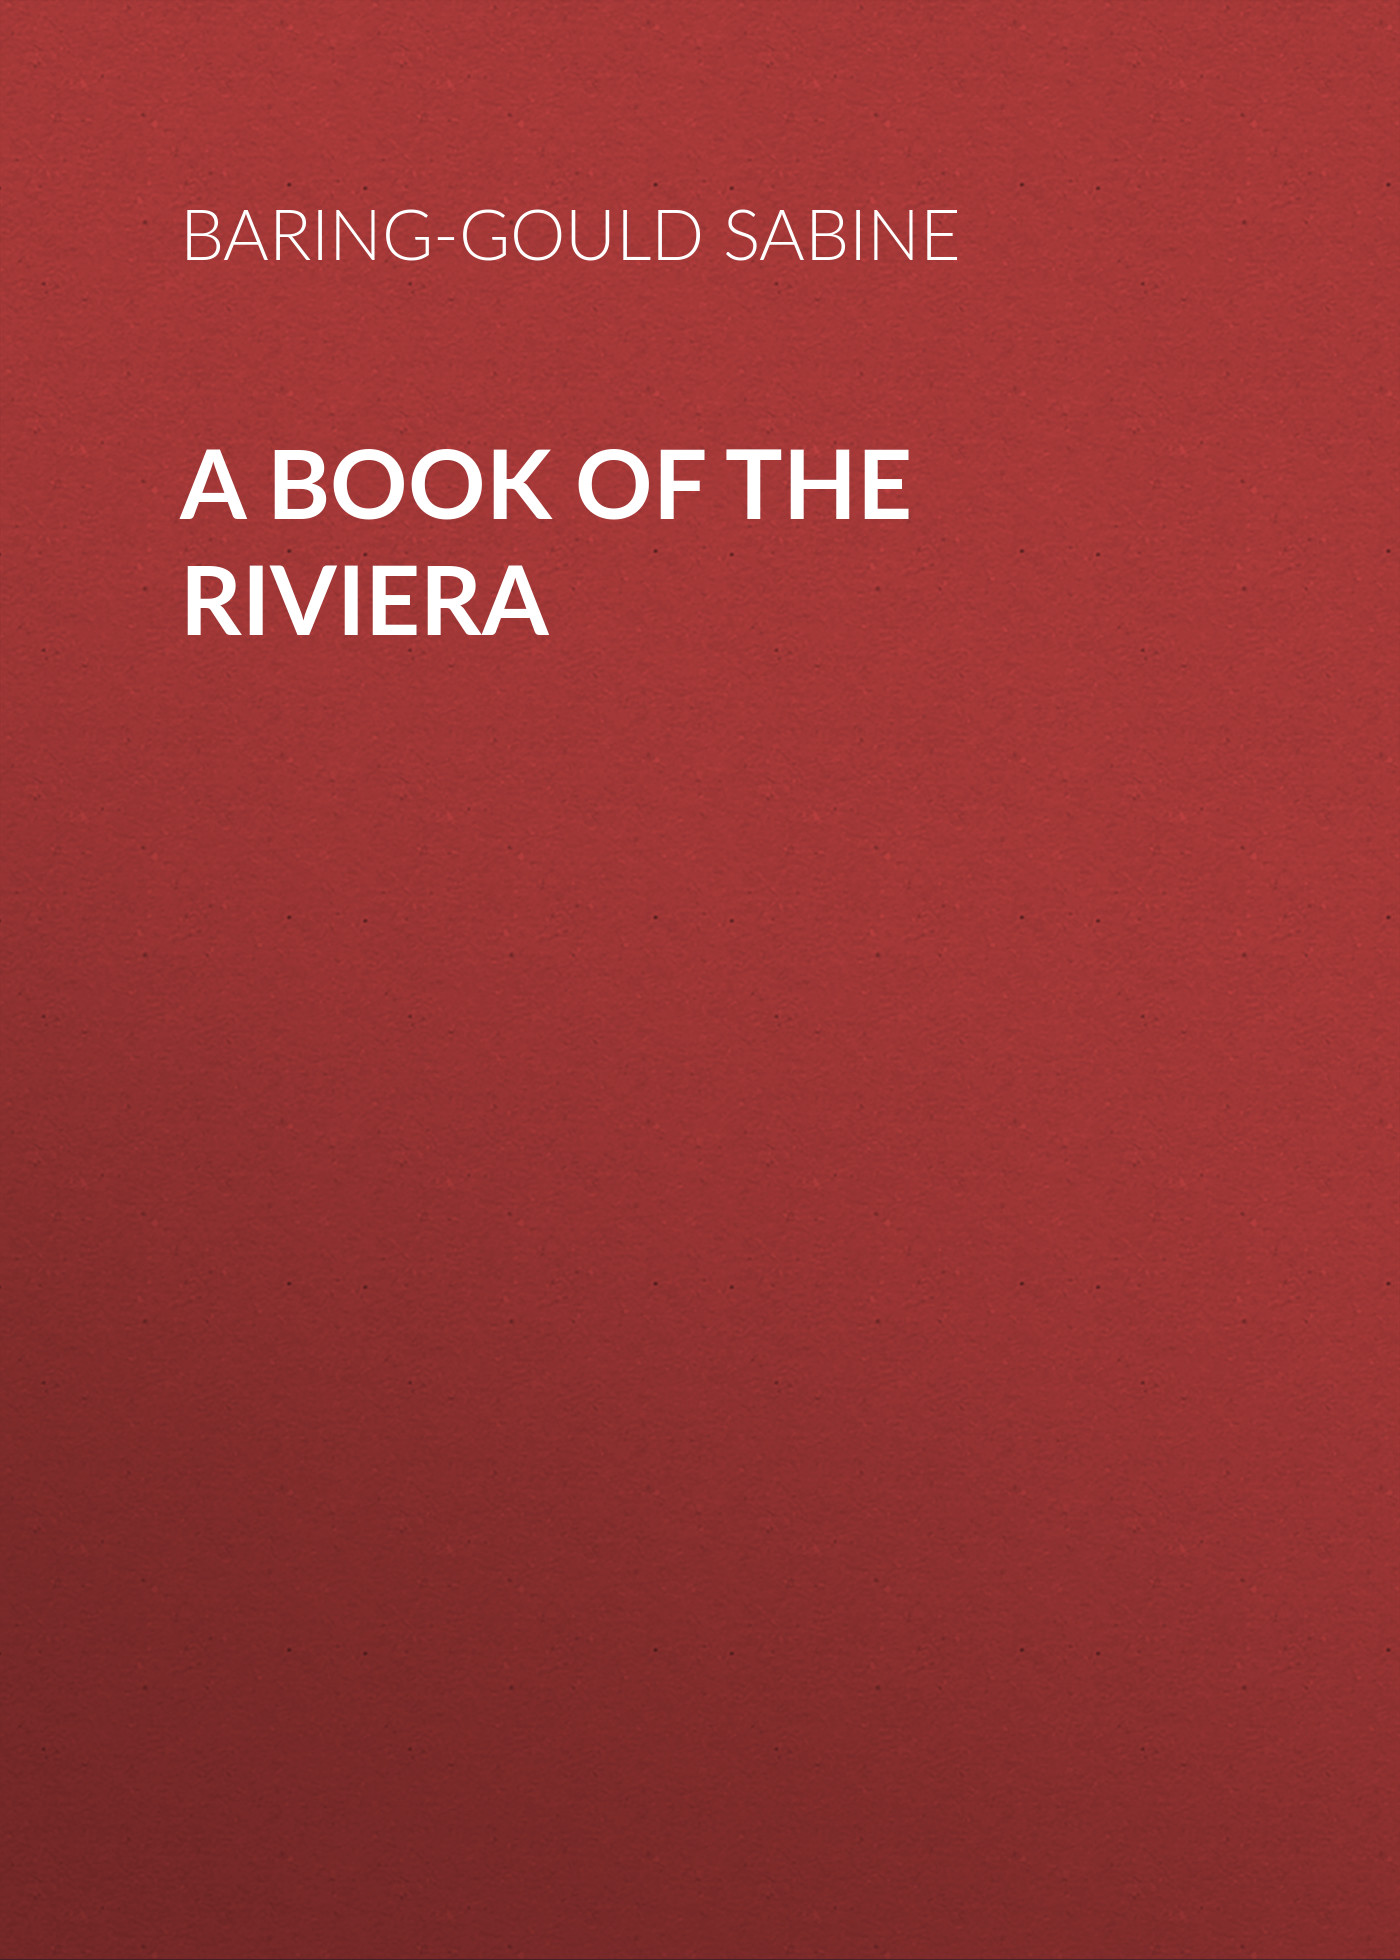 Книга A Book of The Riviera из серии , созданная Sabine Baring-Gould, может относится к жанру Зарубежная старинная литература, Зарубежная классика. Стоимость электронной книги A Book of The Riviera с идентификатором 24167932 составляет 0 руб.